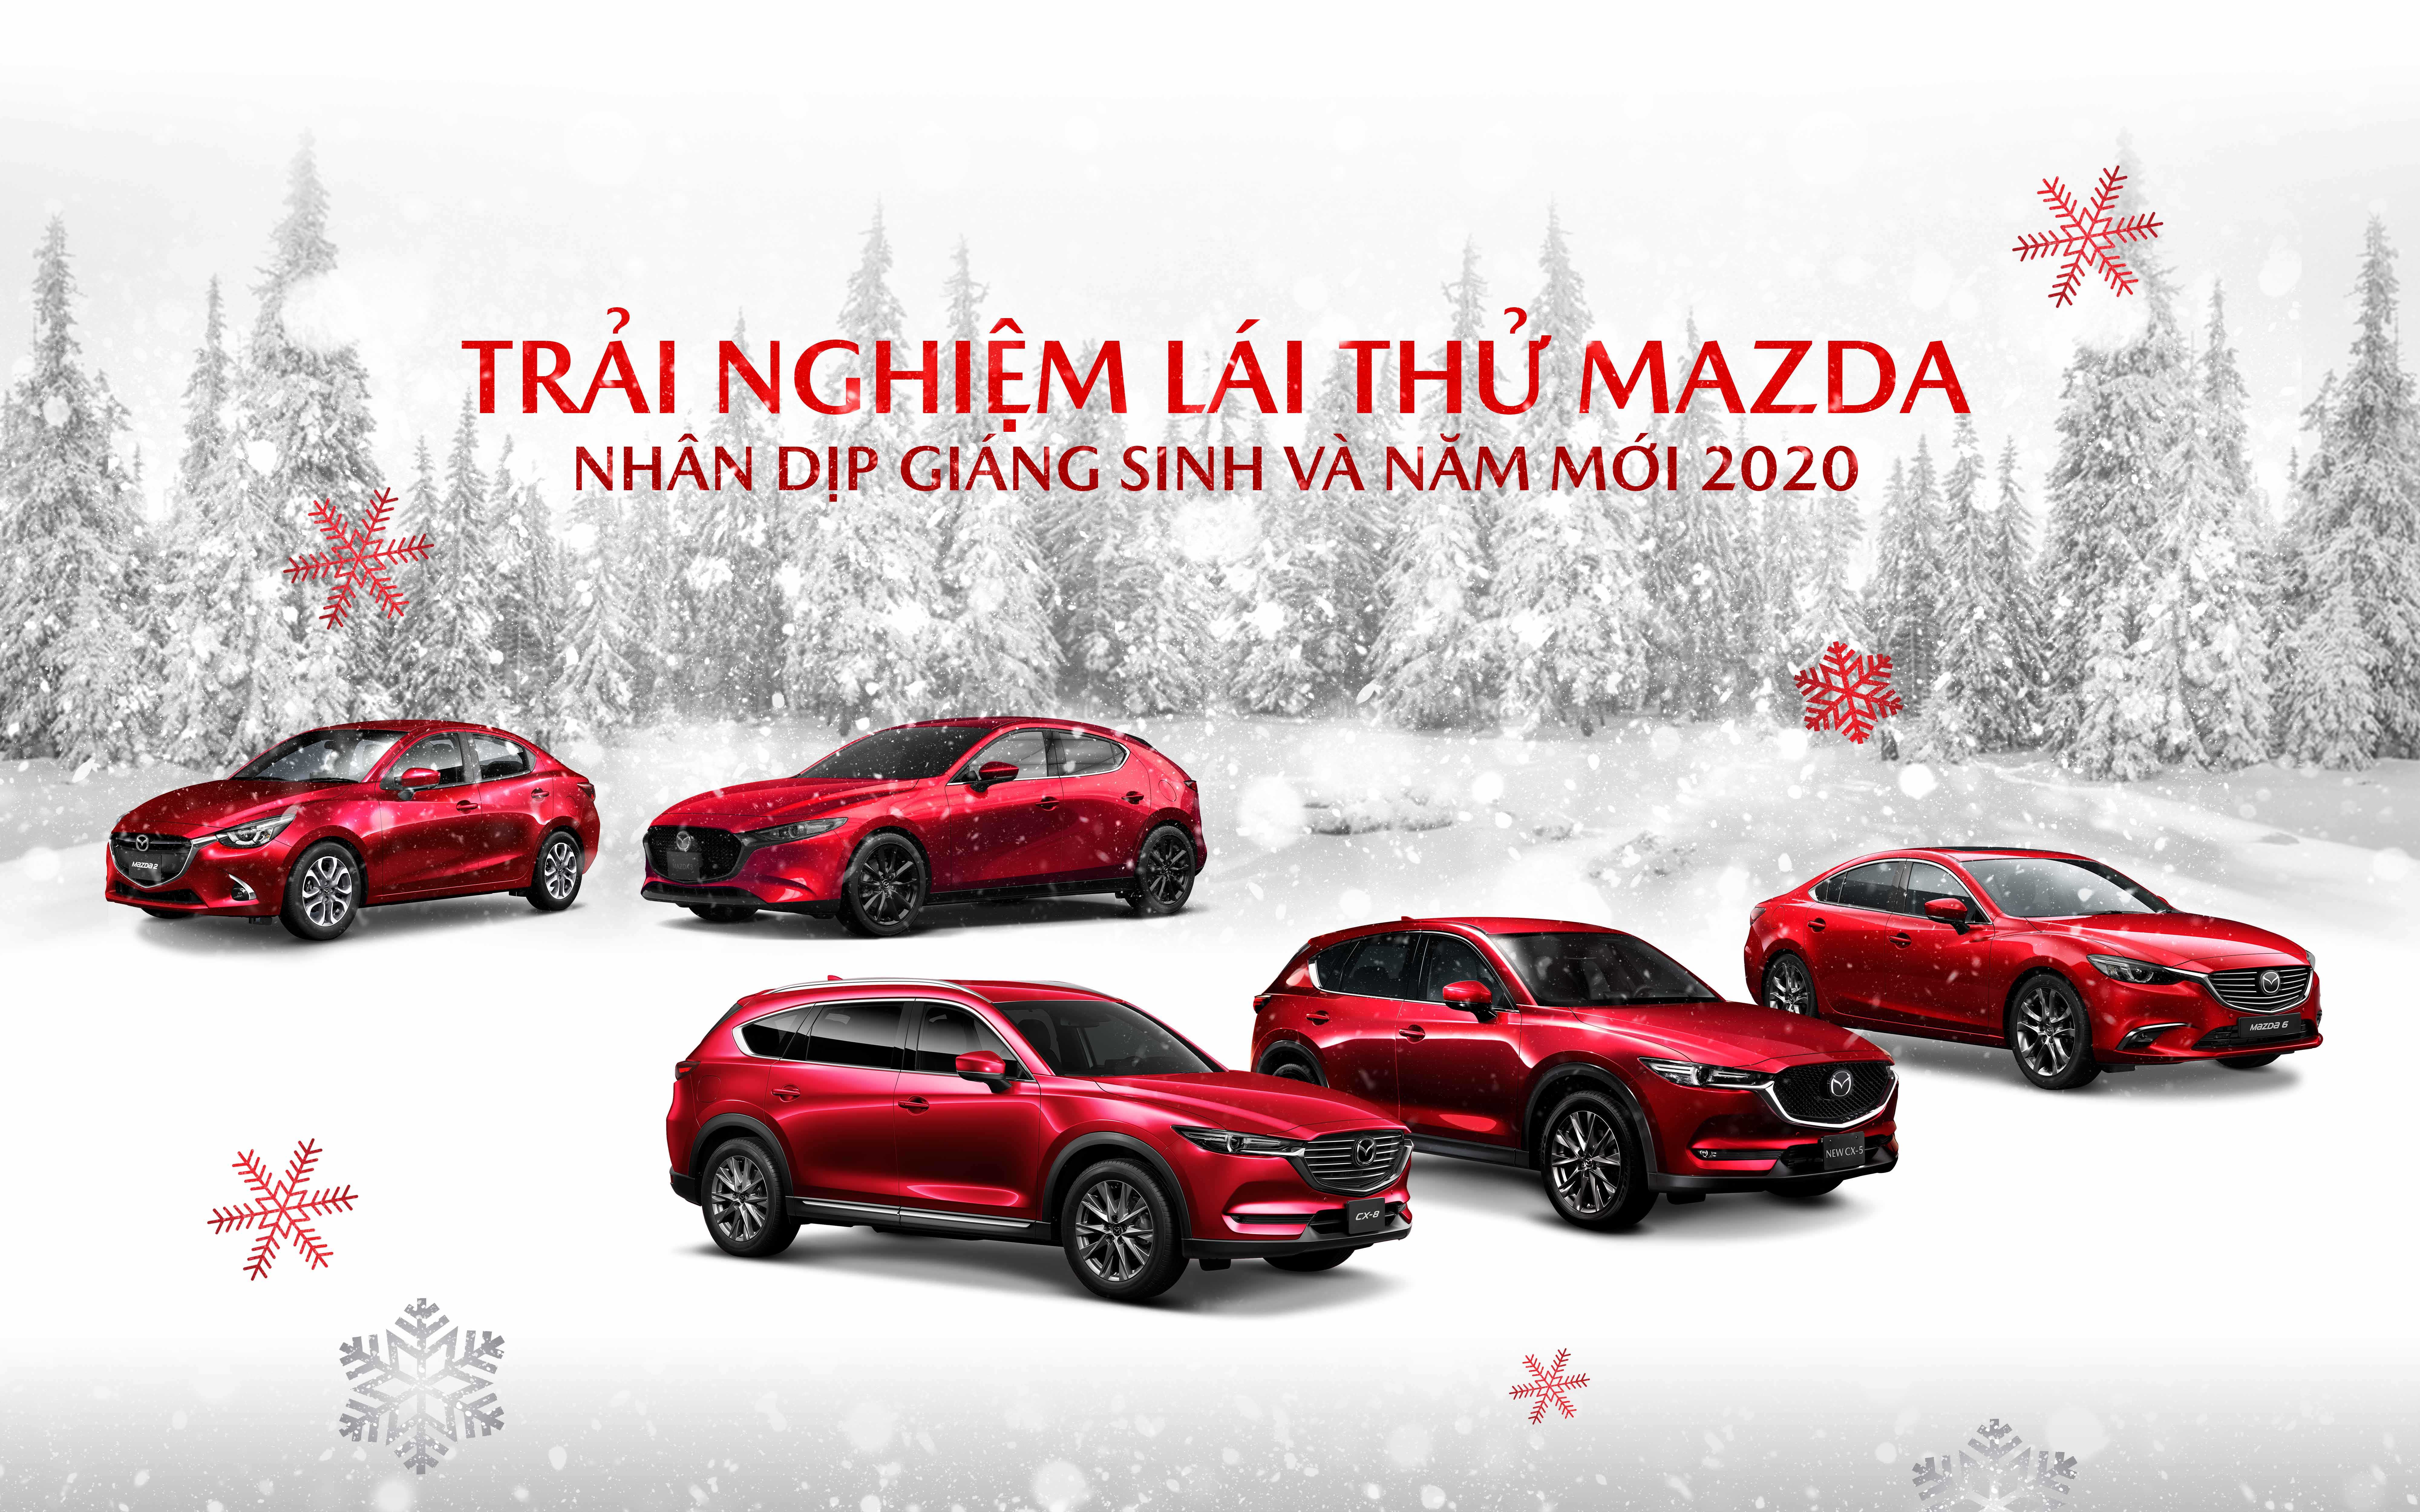 Lái thử và trải nghiệm các dòng xe Mazda trong dịp Giáng sinh và năm mới sẽ là một trải nghiệm đầy thú vị. Mazda mang đến không chỉ các tính năng vượt trội mà còn cảm giác lái thoải mái và an toàn trên mọi chuyến đi.